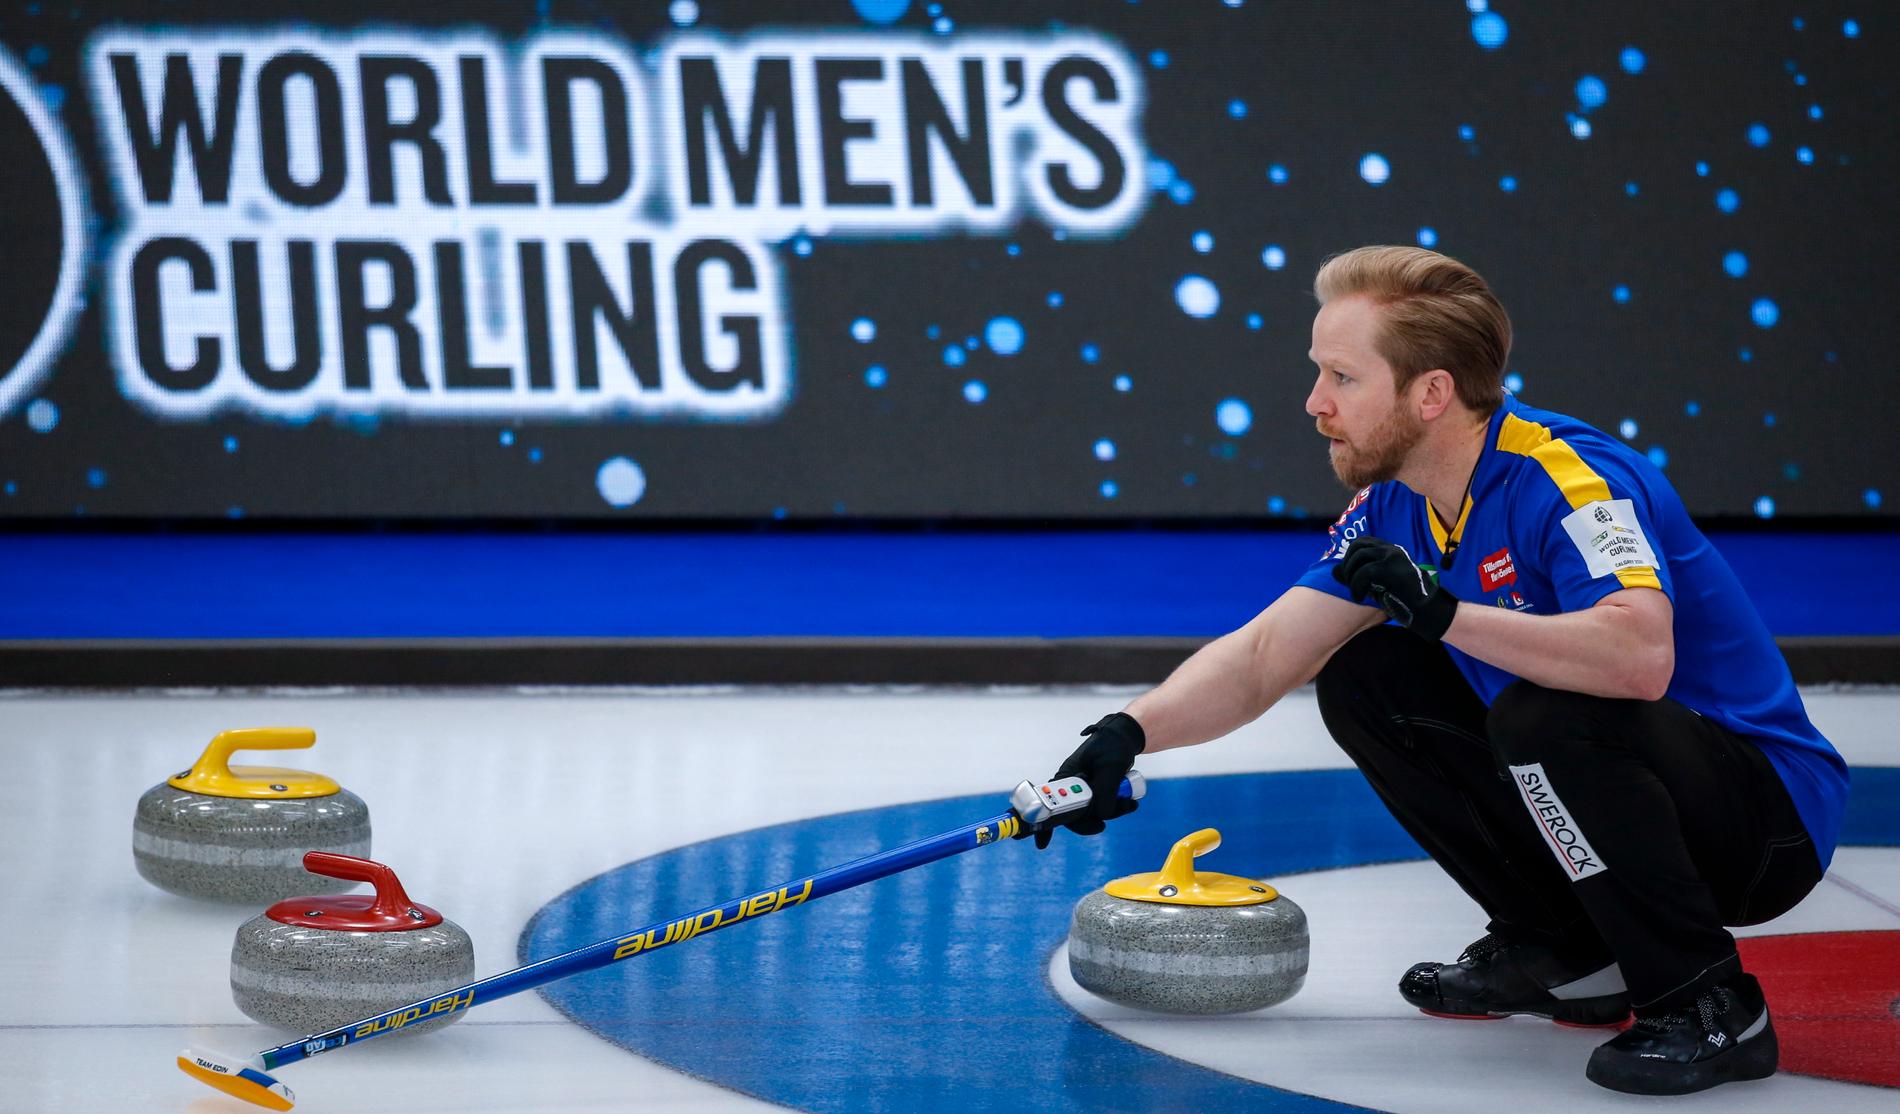 Sveriges skipper Niklas Edin visar hur lagkamraterna ska slå en sten under curling-VM.